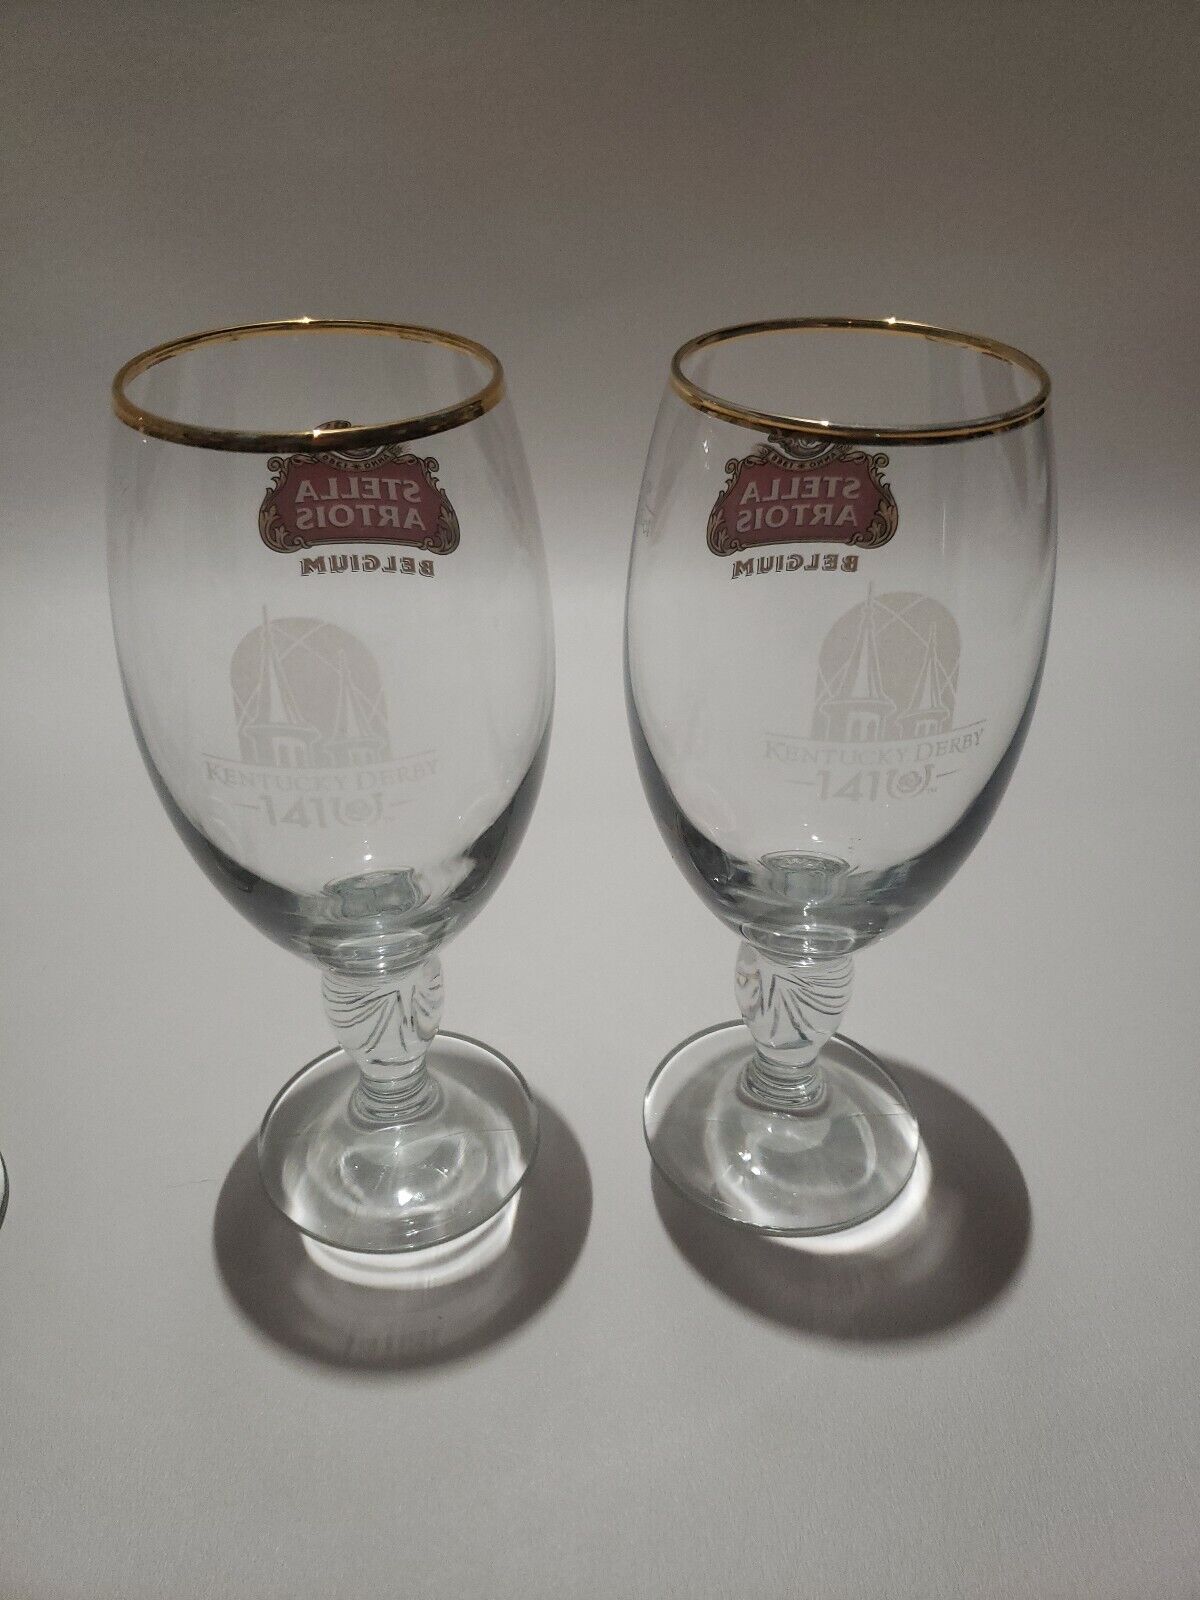 Kentucky Derby 141  Stella Artois Chalice 33CL Beer Glasses  Stella Artois - фотография #3